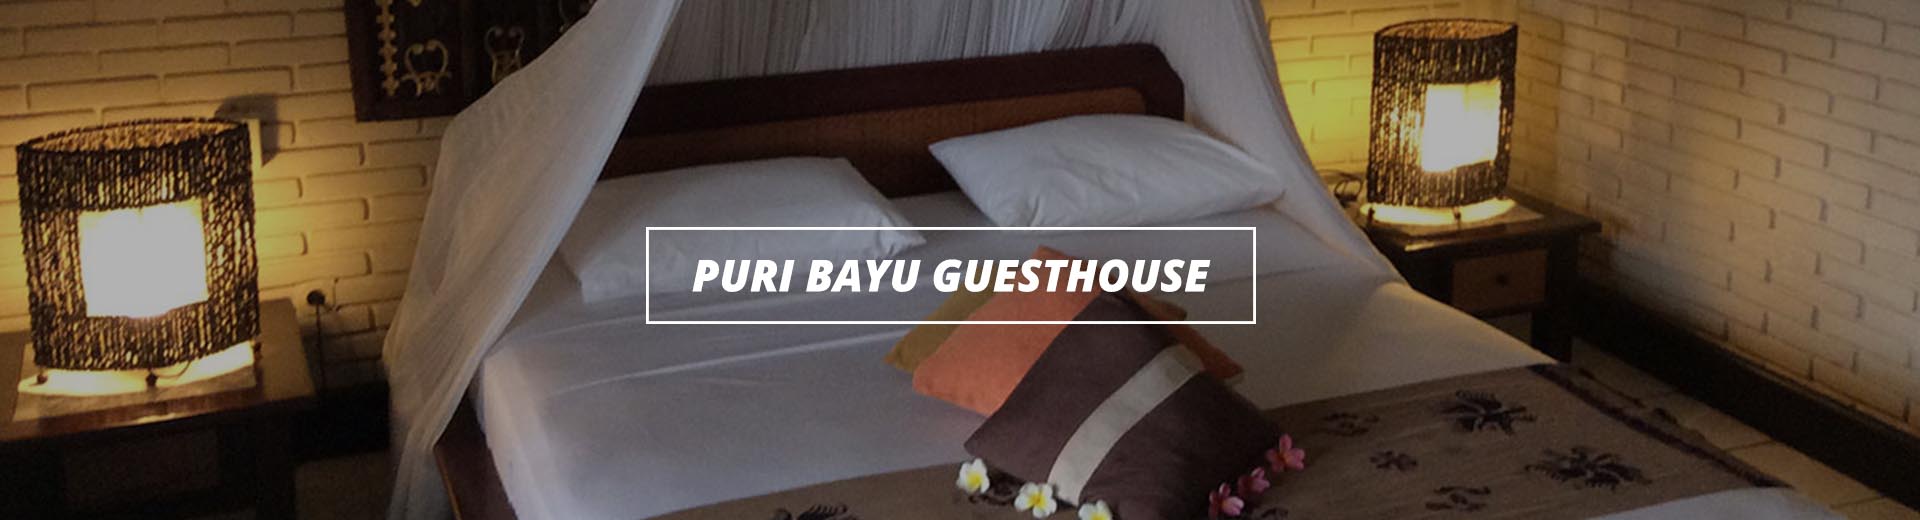 Puri Bayu Guesthouse Ubud